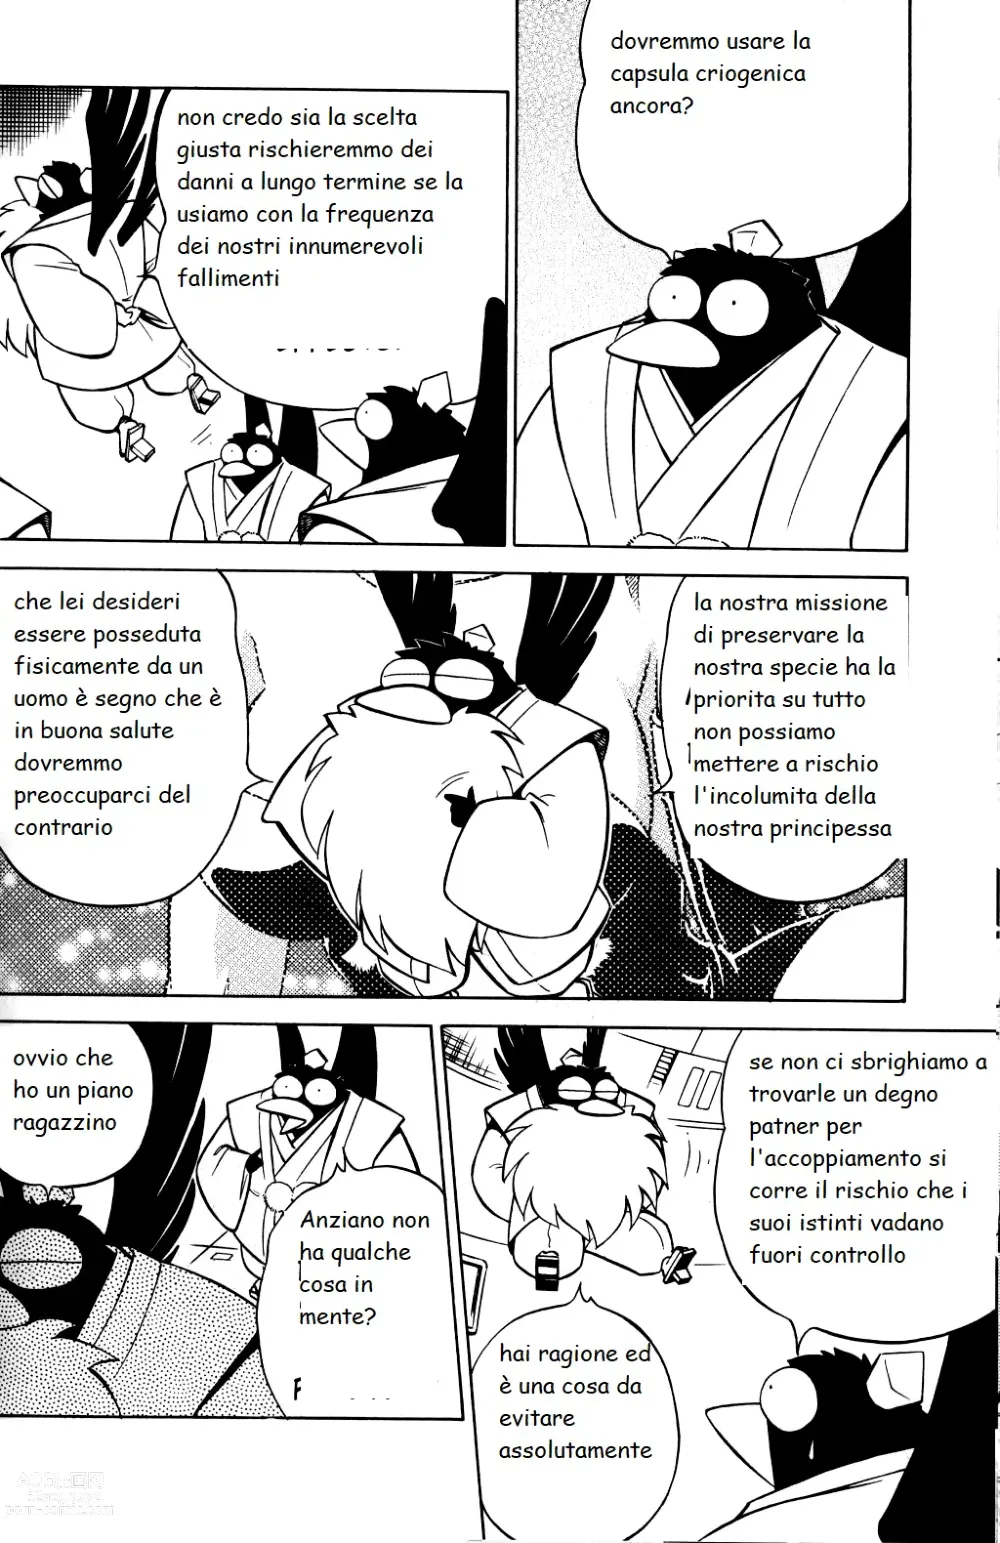 Page 7 of doujinshi lamante di kurama